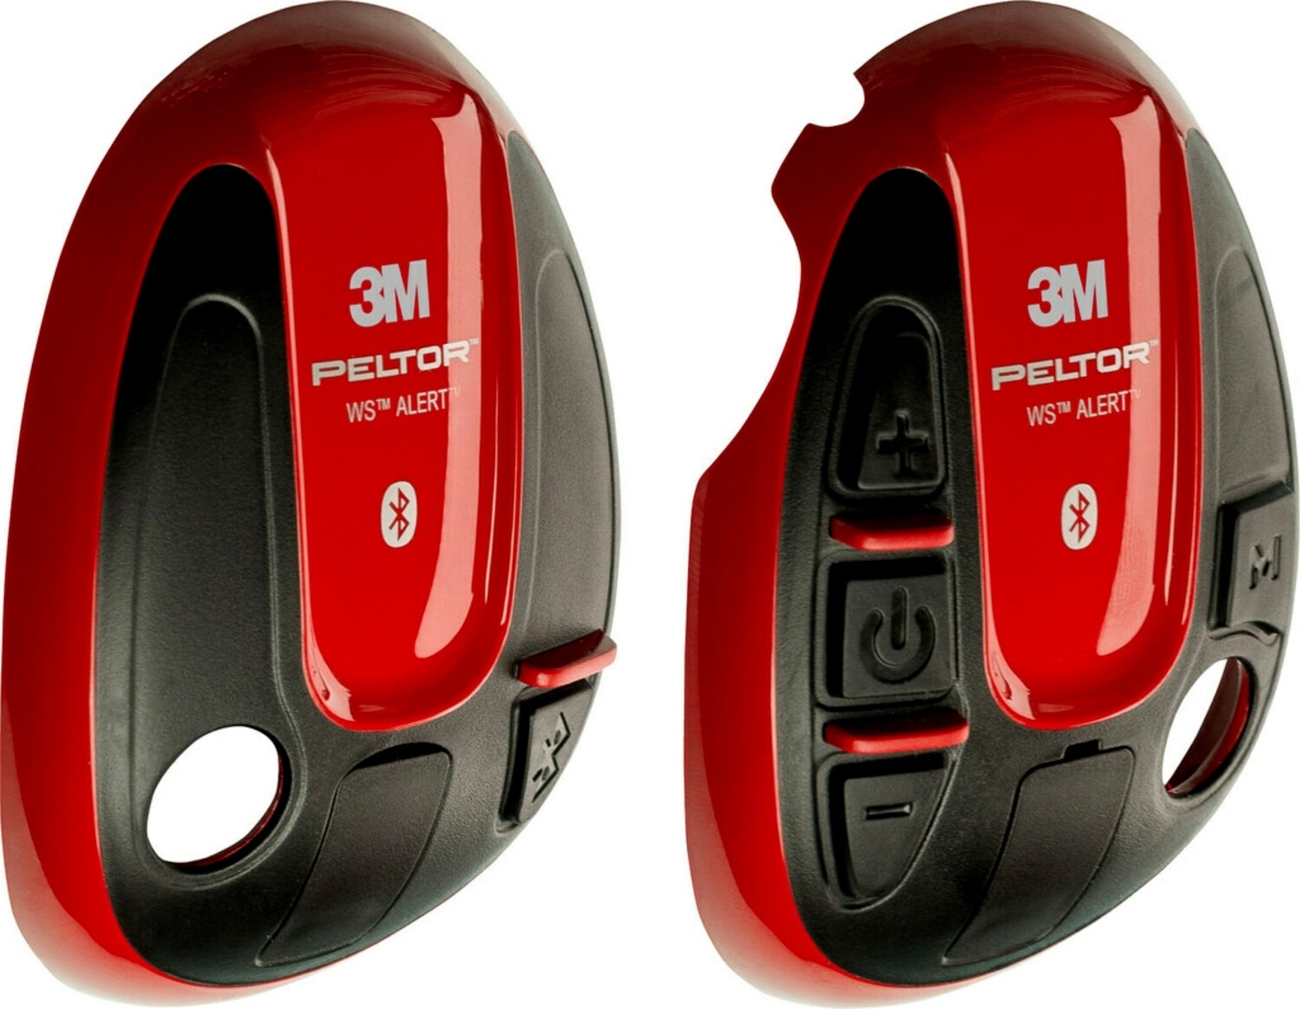 3M PELTOR-suojukset WS ALERT-kuulokkeille, punainen, 1 pari (vasen oikea), 210300-664-RD/1